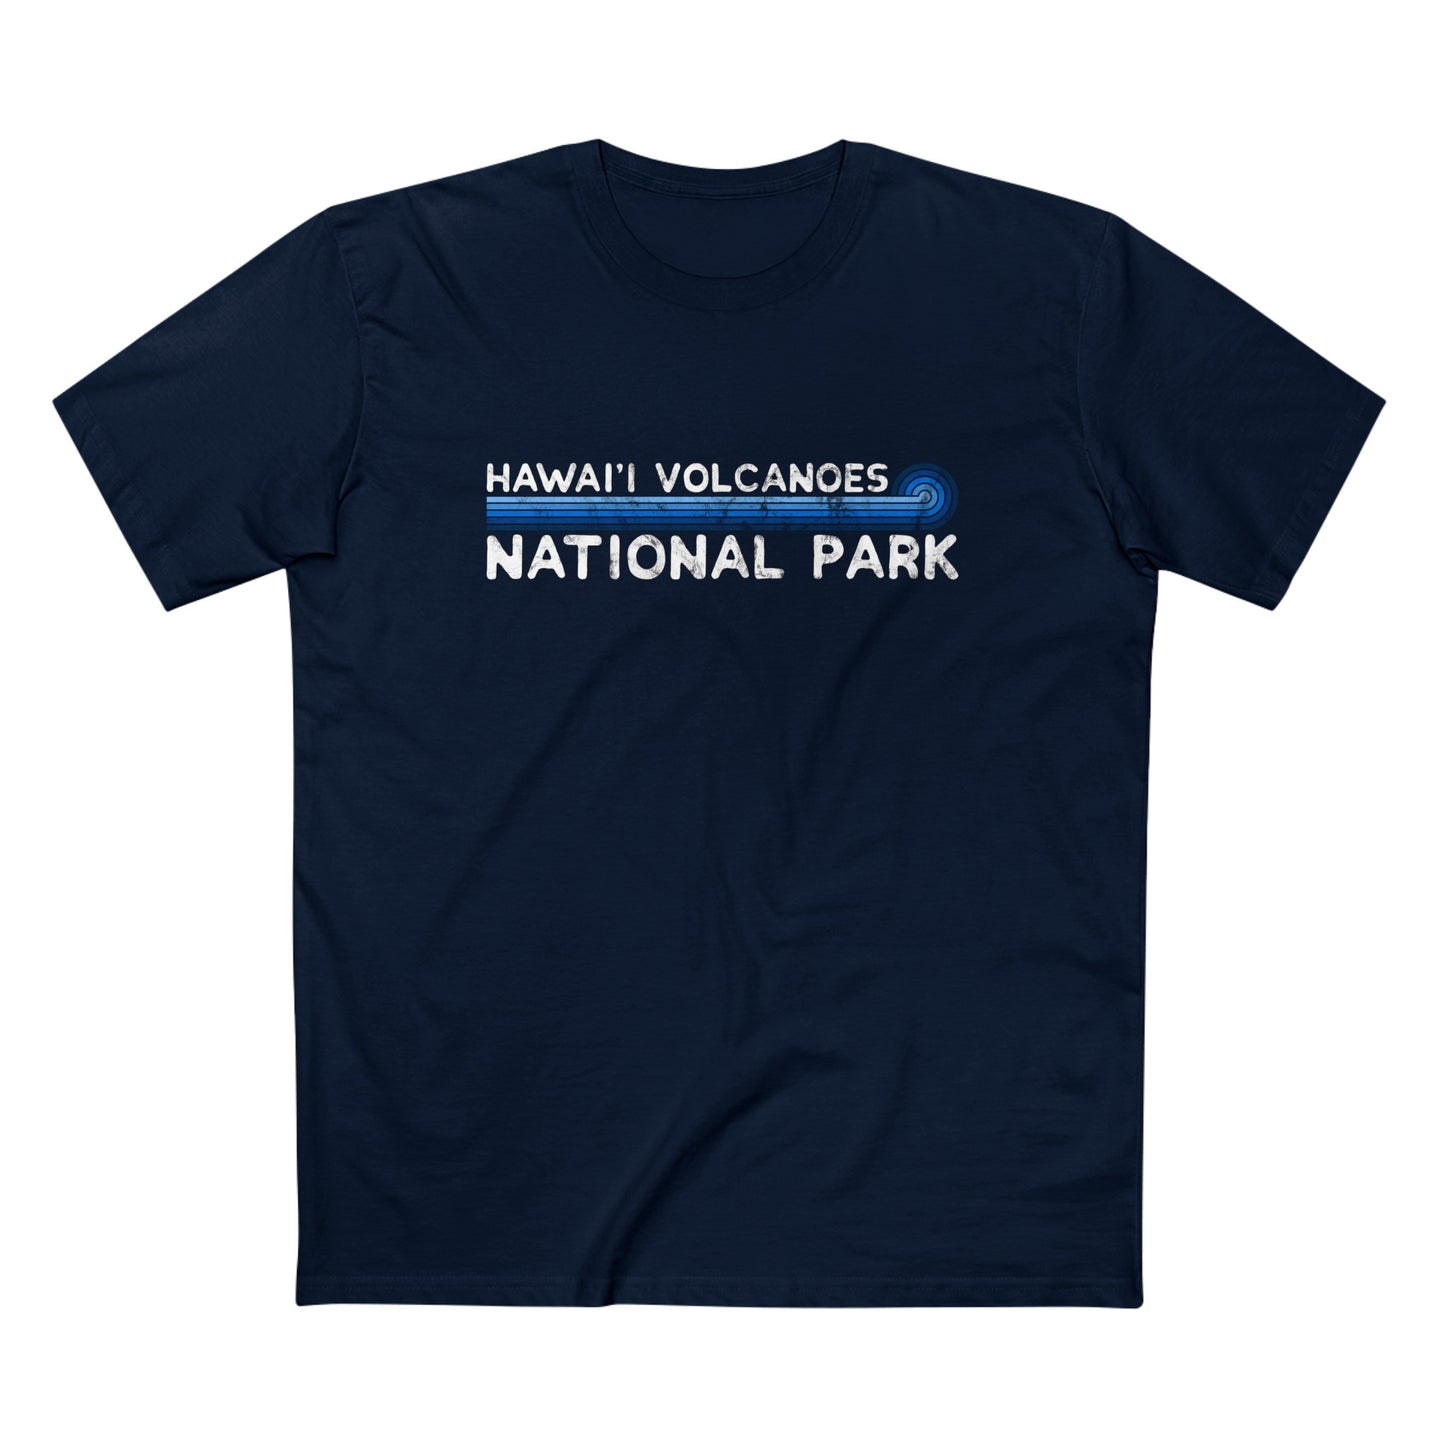 Hawaii Volcanoes National Park T-Shirt - Blue Vintage Stretched Sunrise